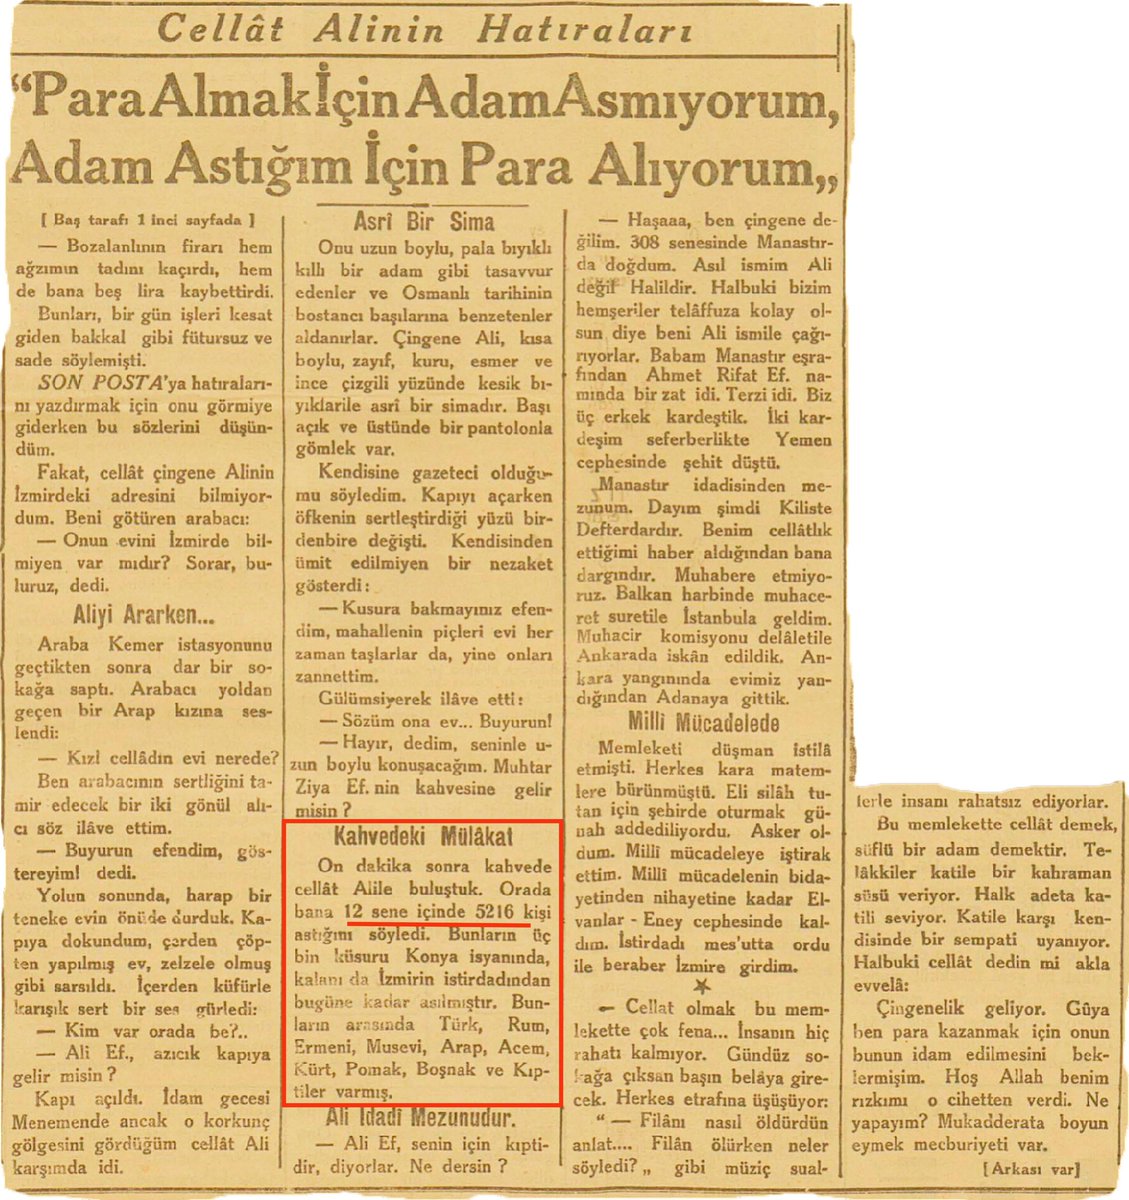 Yunan bile bu kadar zulüm yap(a)mazdı. 📰3 Mart 1931 Son Posta Gazetesi İstiklal Mahkemesi katillerinden Cellat Ali '12 sene içinde sadece kendisi 5216 kişi asmış' Yalnızca bir cellat bu kadar kişi astı ise varın siz düşünün Kemalist diktatörlüğün kaç kişi katlettiğini‼️